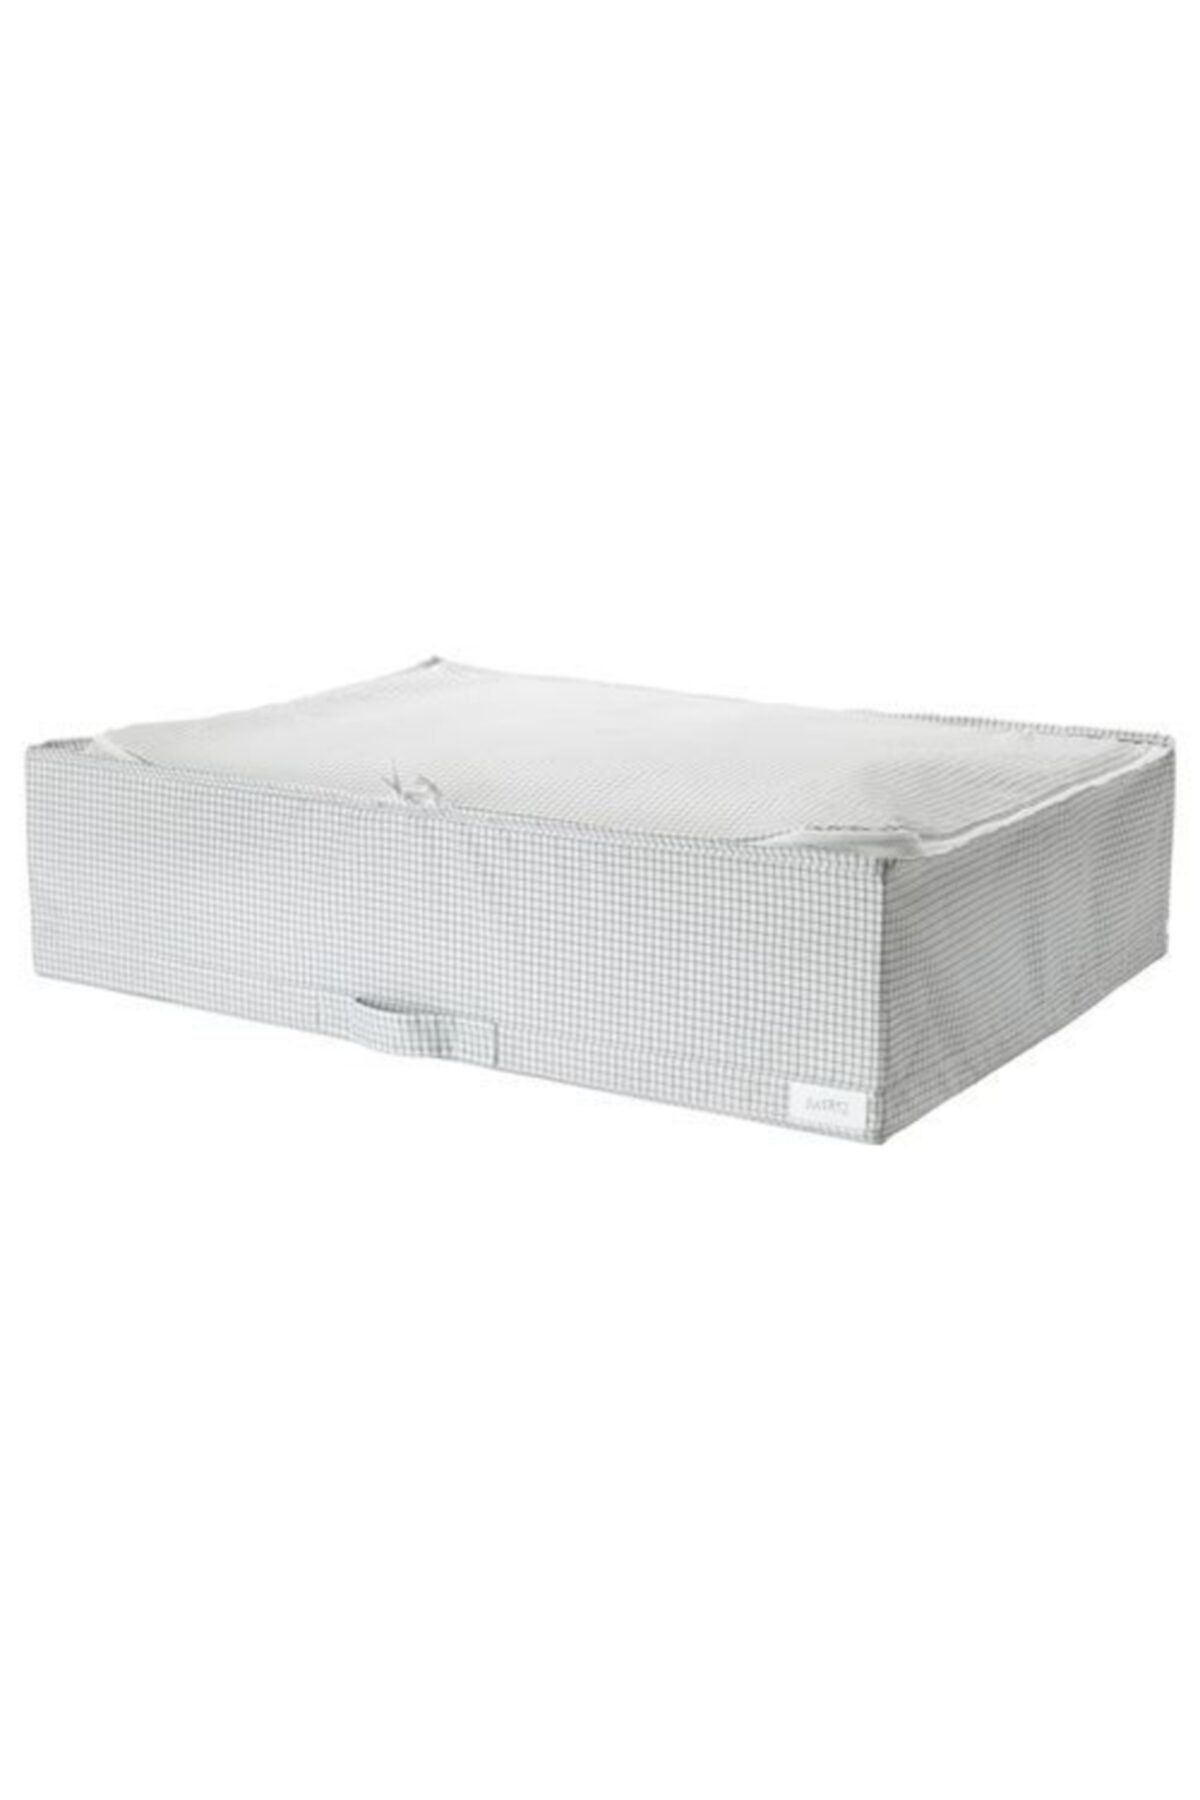 IKEA Fermuarlı Kutu-hurç Düzenleme Kutusu Meridyendukkan Ölçü 71x51x18 Cm Gri-beyaz